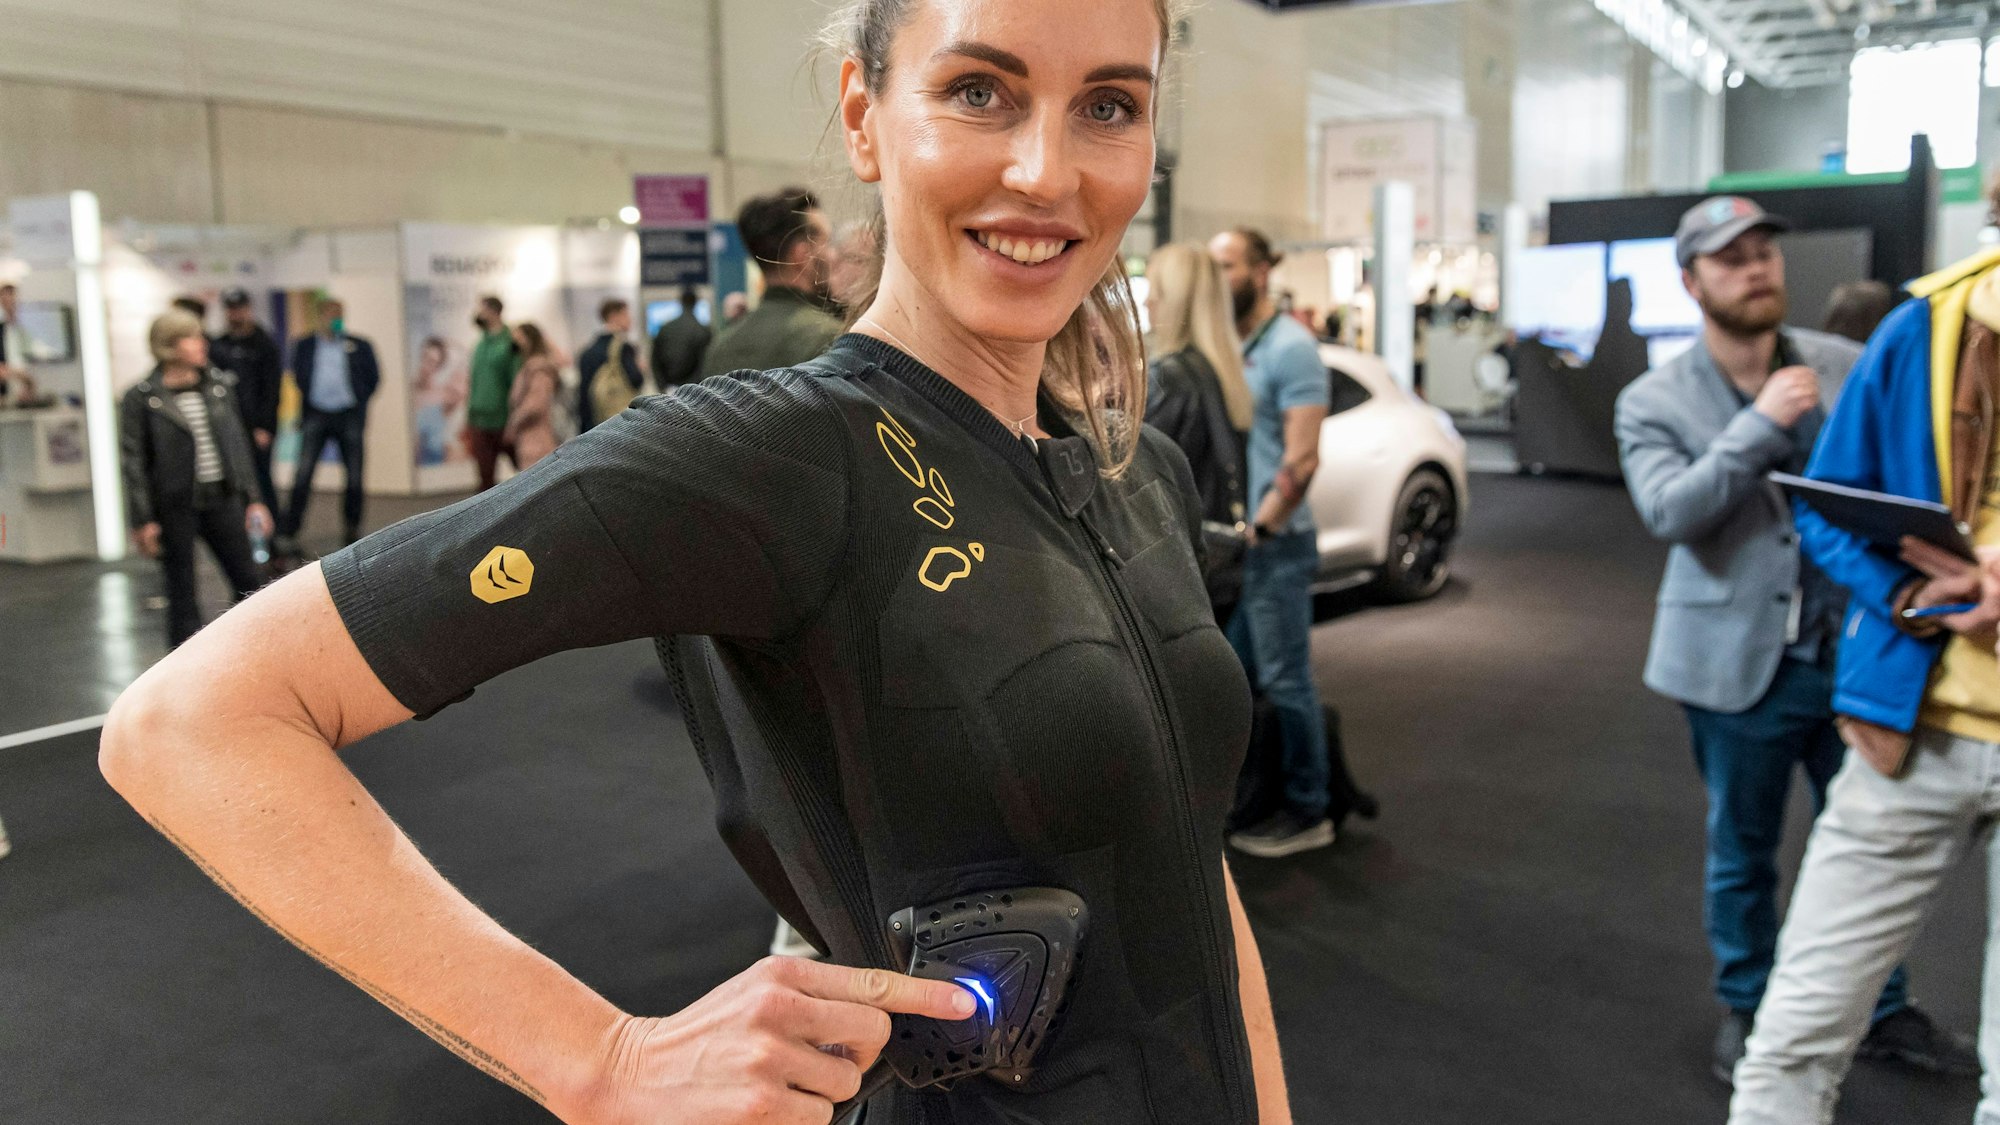 Ein Modell drückt sich ein elektronisches Fitness-Messgerät an die Hüfte: Nach zwei Jahren Corona-Pause hatte im April 2022 in der Kölnmesse wieder die Fitnessmesse Fibo stattgefunden.